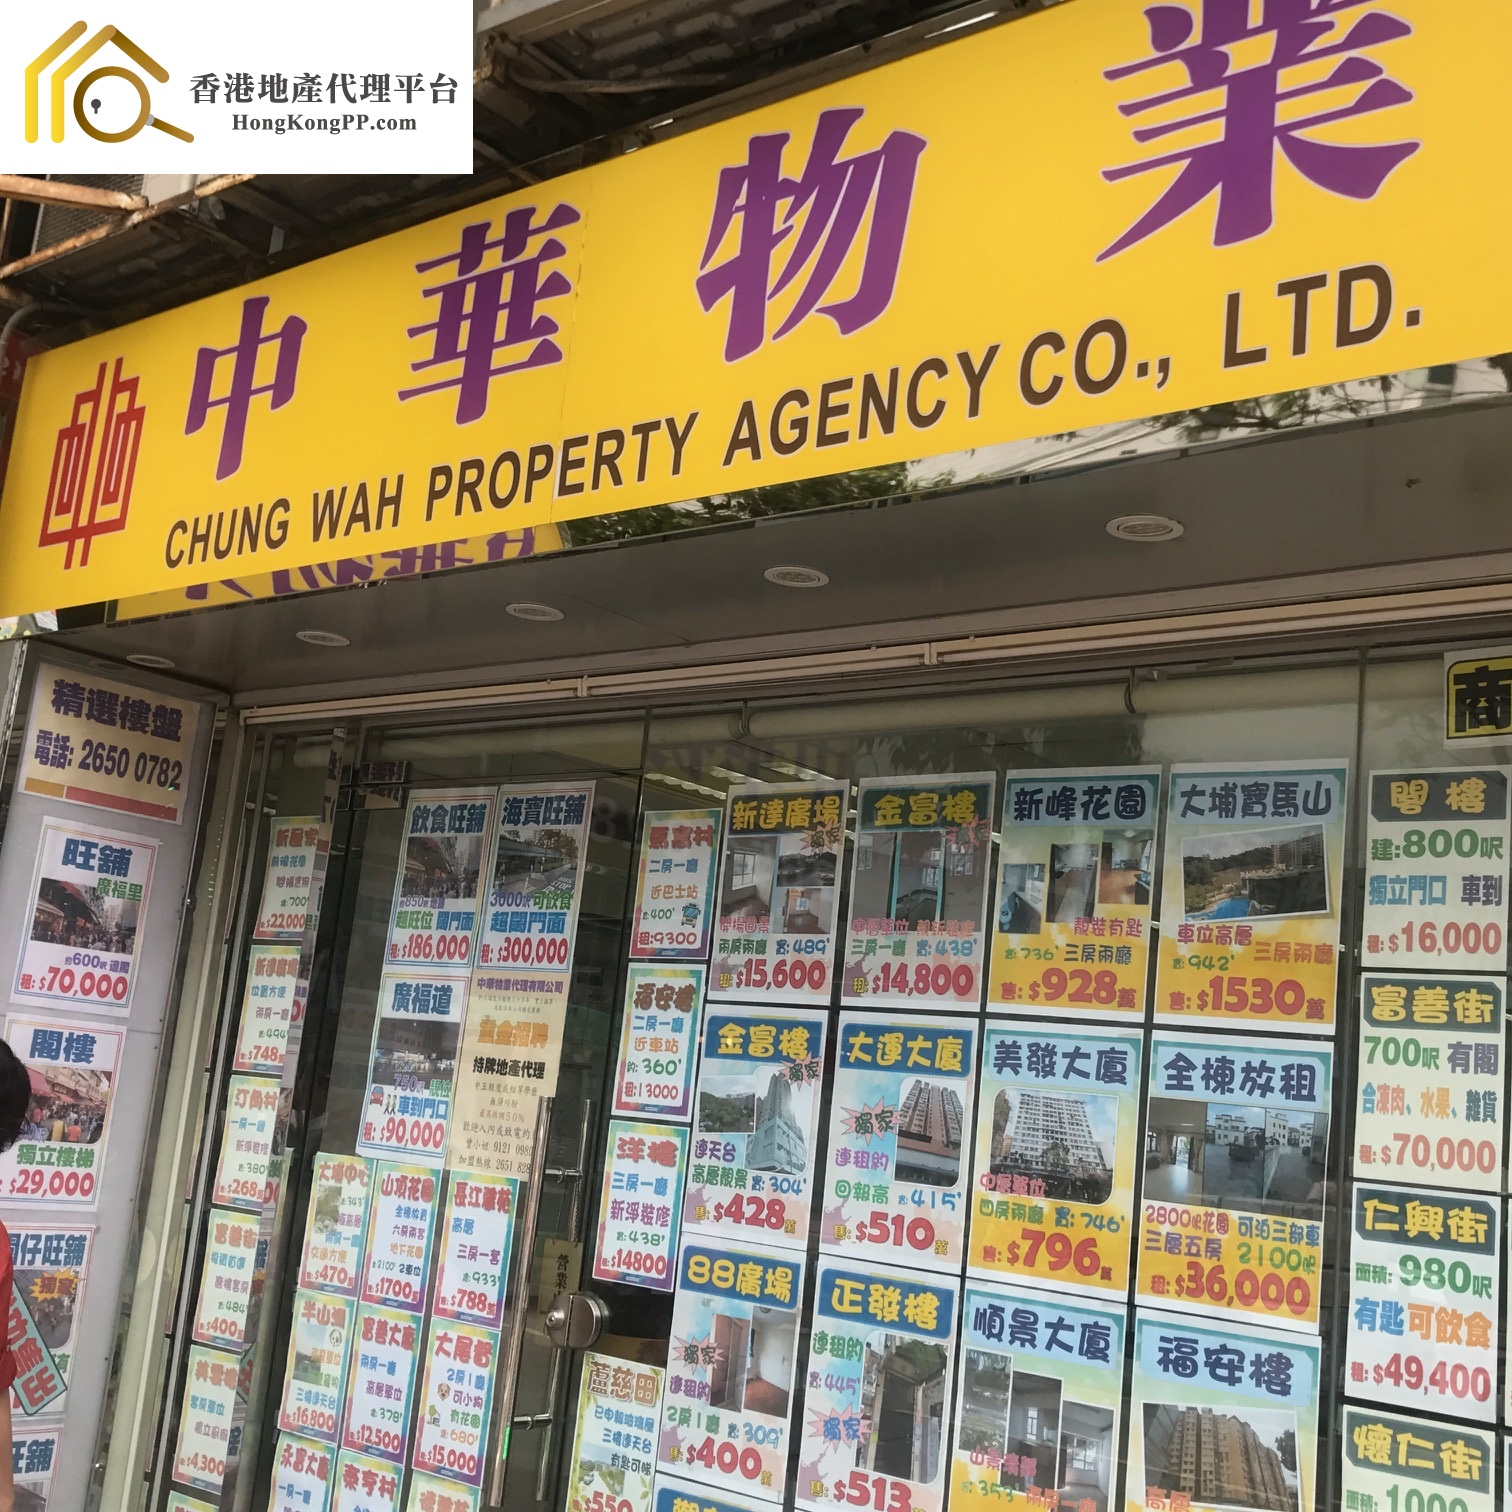 地產代理公司: 中華物業代理 Chung Wah Property Agency